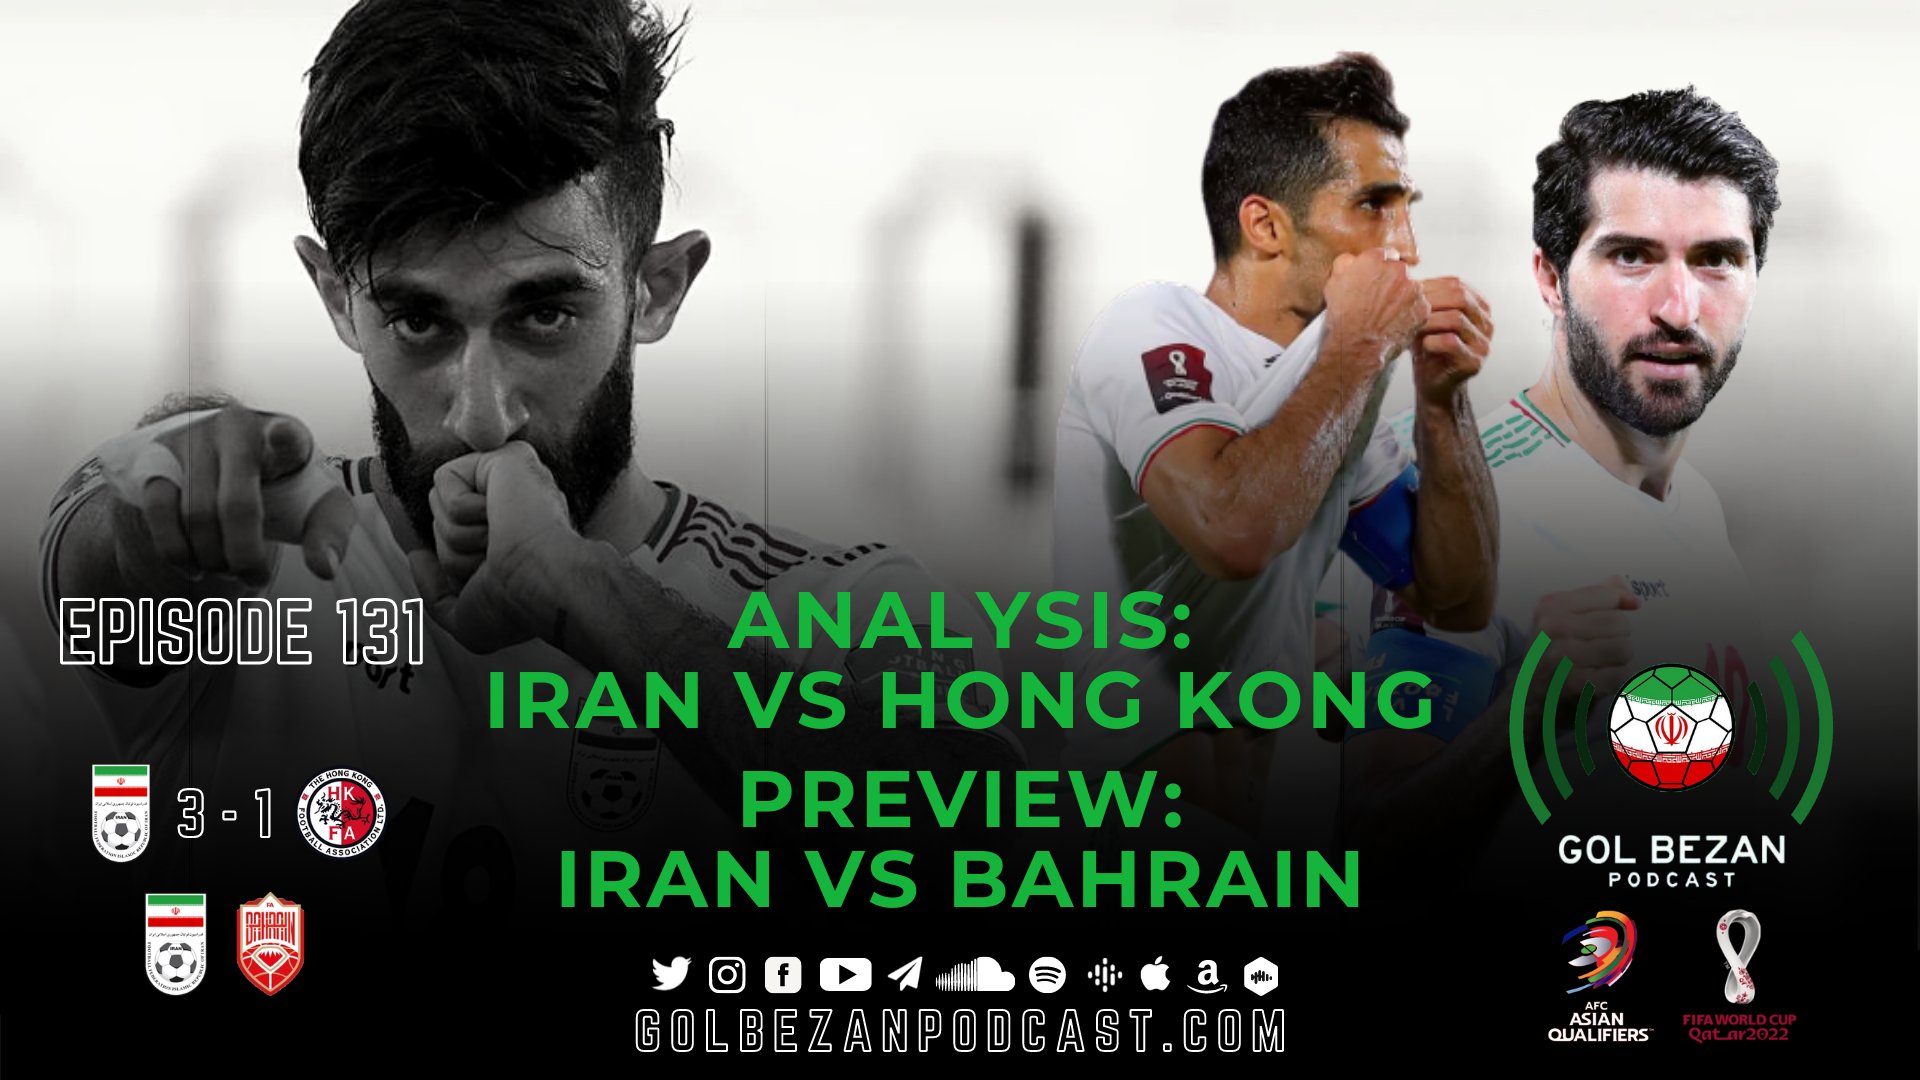 Analysis: Iran 3 - 1 Hong Kong | Preview: Iran vs. Bahrain